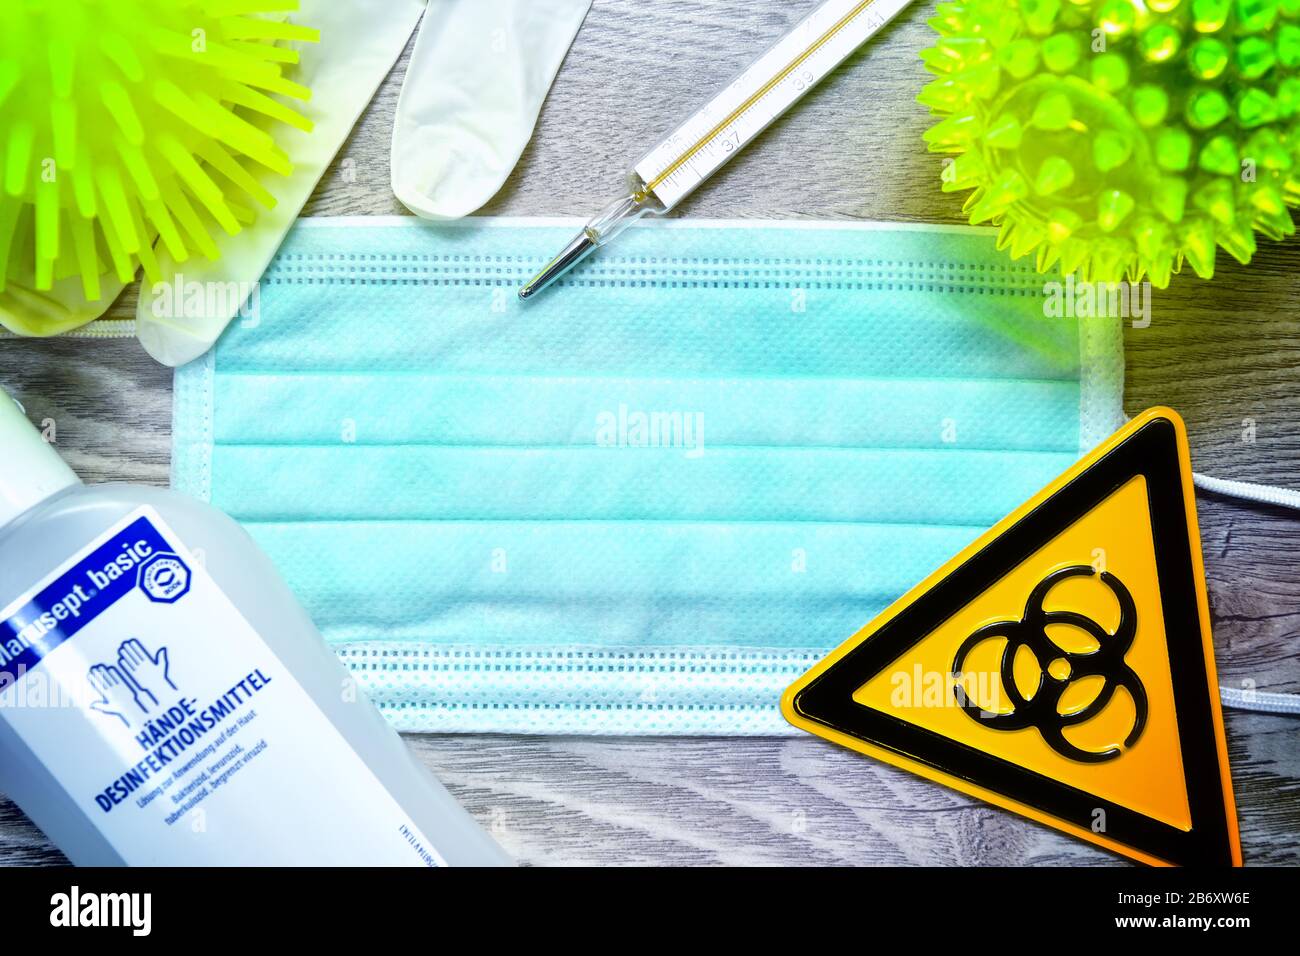 Mundschutz, Biogefaehrdungsschild, Schutzhandschuhe, Fieberthermomètre und Desinfektionsmittel auf einem Tisch, Symbolfoto Coronavirus Banque D'Images